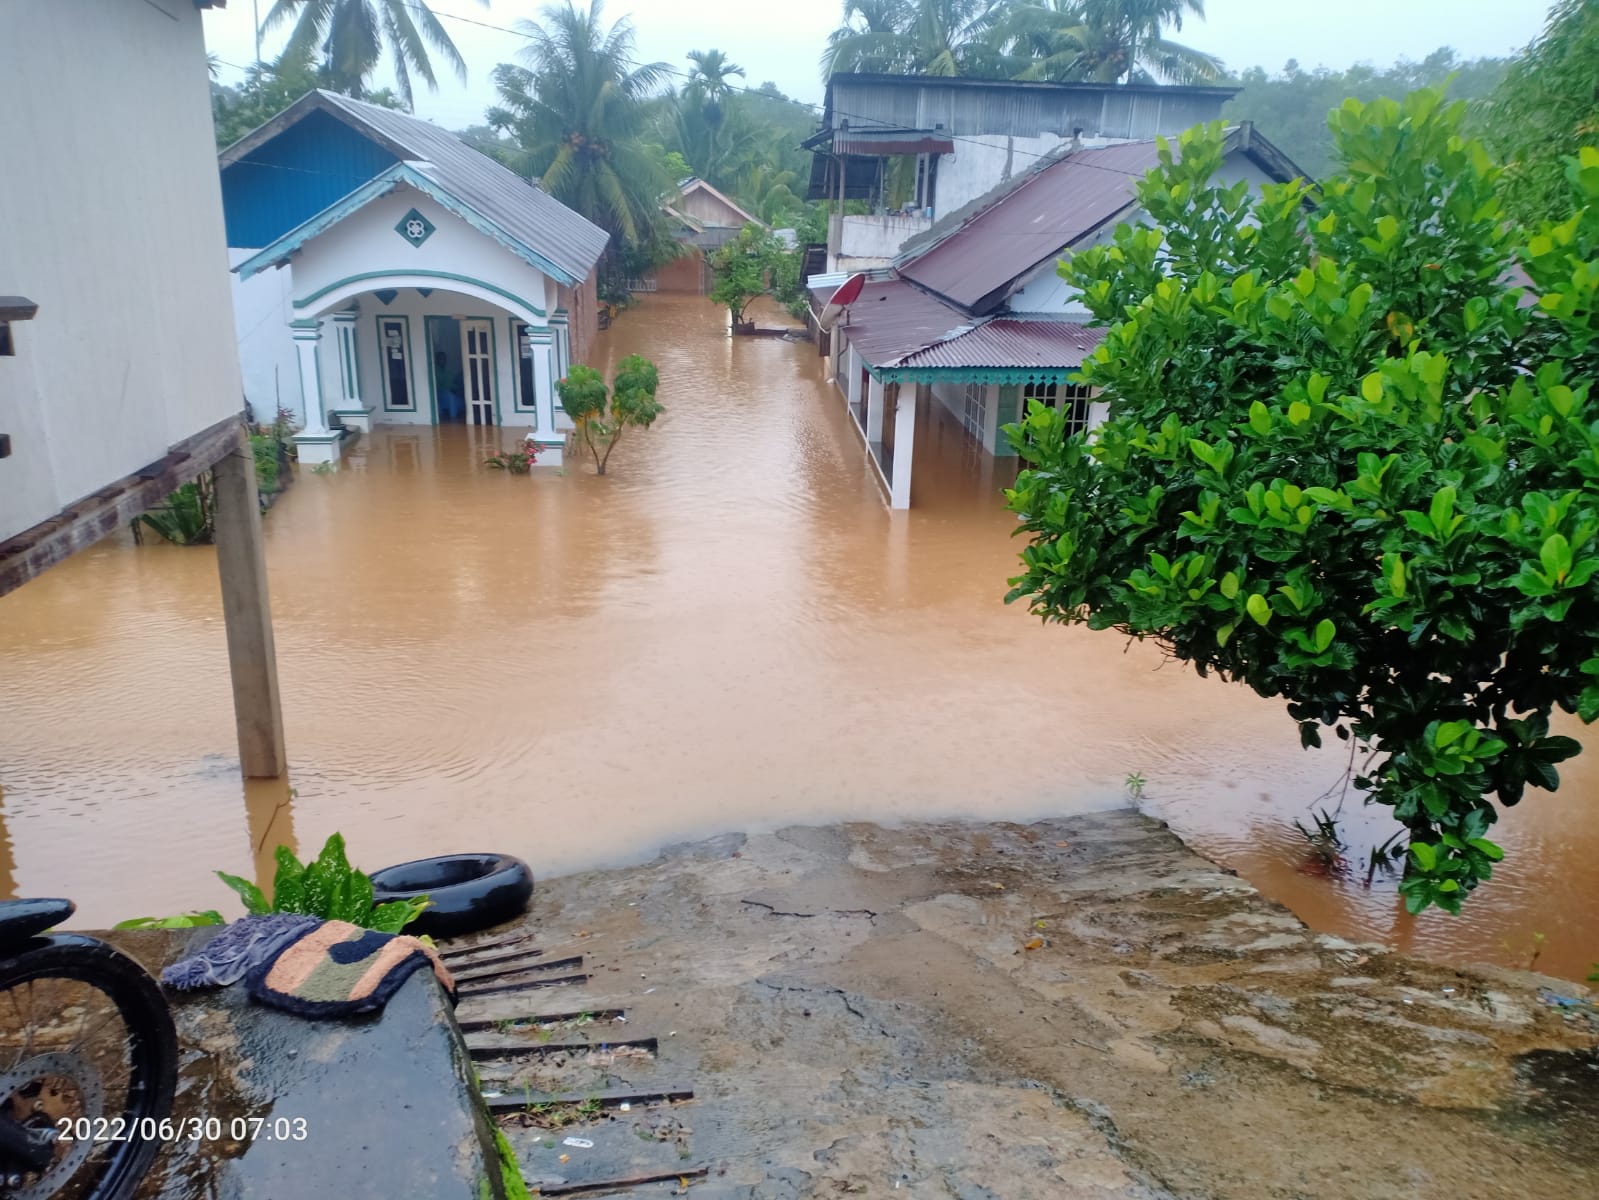 Rumah Terendam Banjir, 50 Warga Taba Terunjam Mengungsi